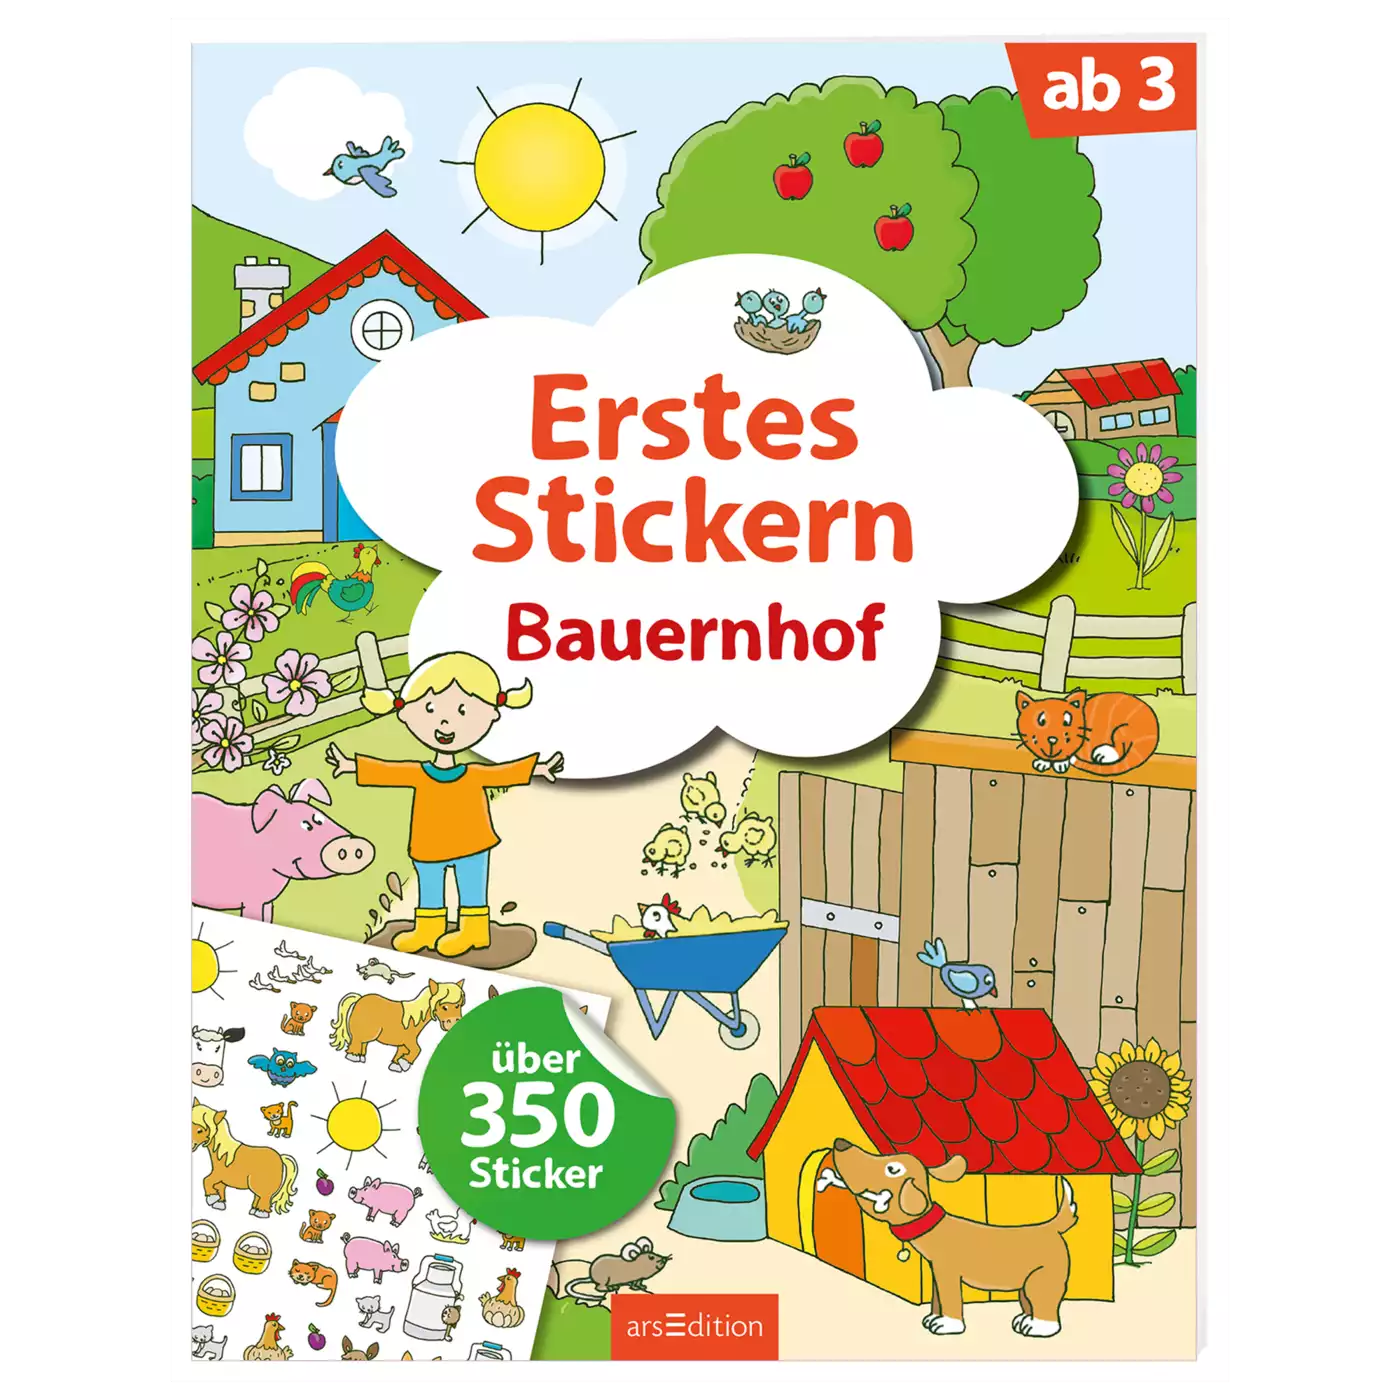 Erstes Stickern Bauernhof arsEdition 2000571971608 1